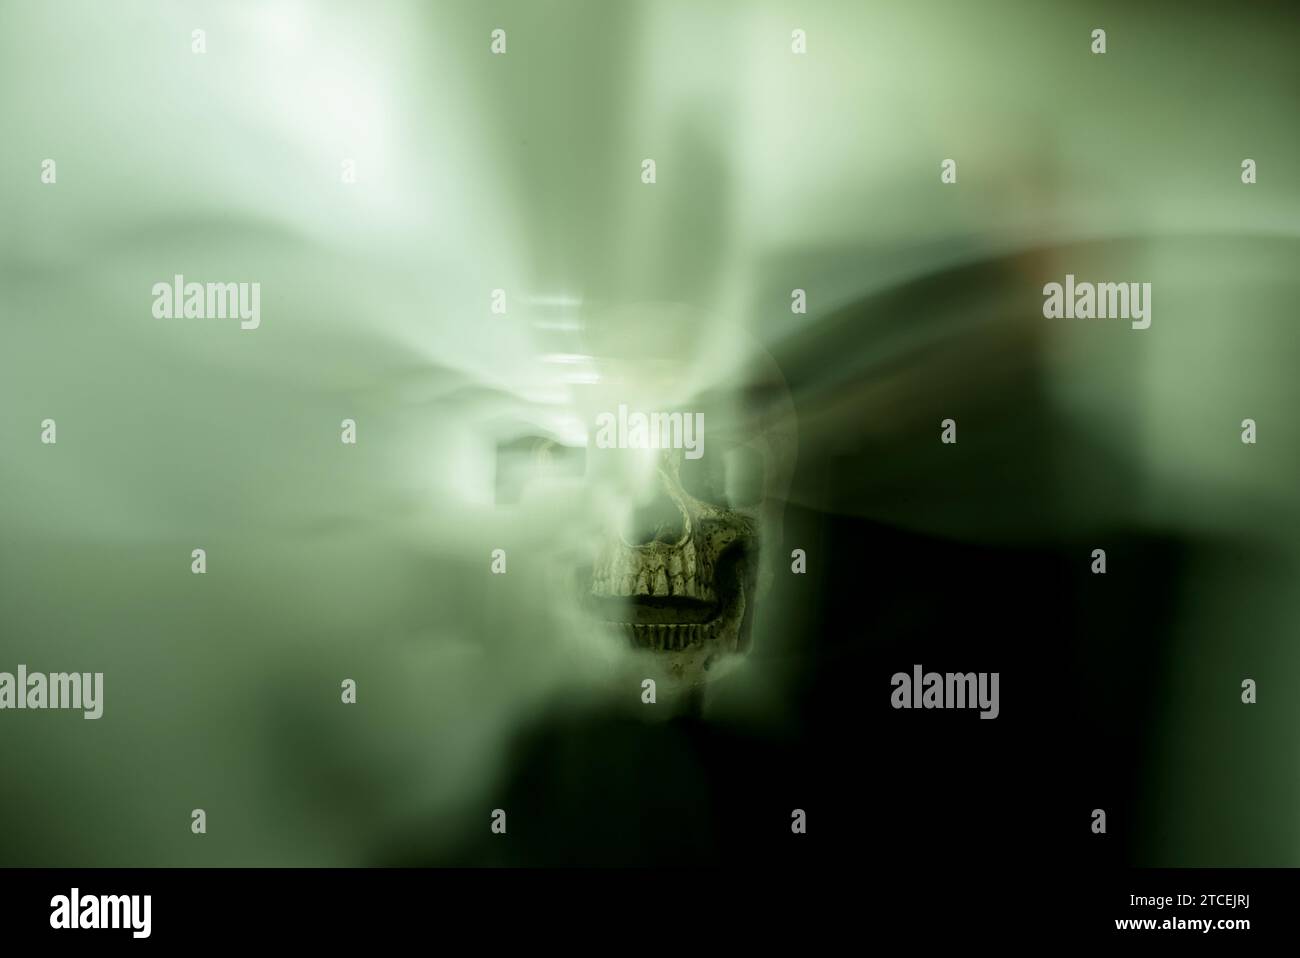 Une composition envoûtante avec un crâne au centre, entouré de brumes lumineuses éthérées vertes et blanches. Le schéma de couleurs blanc-vert contre Banque D'Images